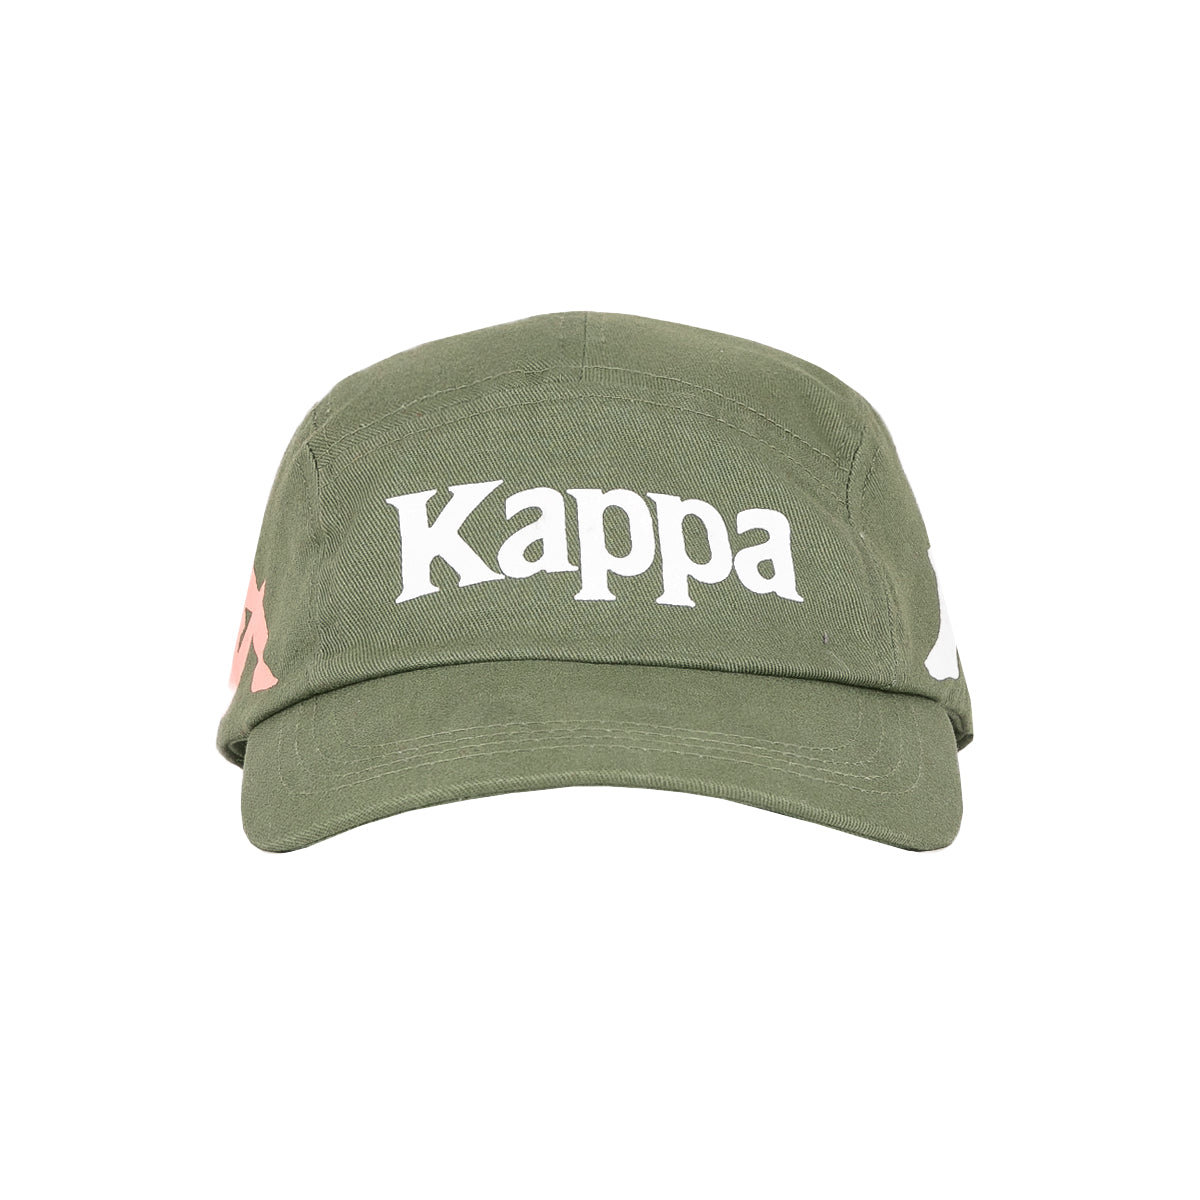 Kappa cap